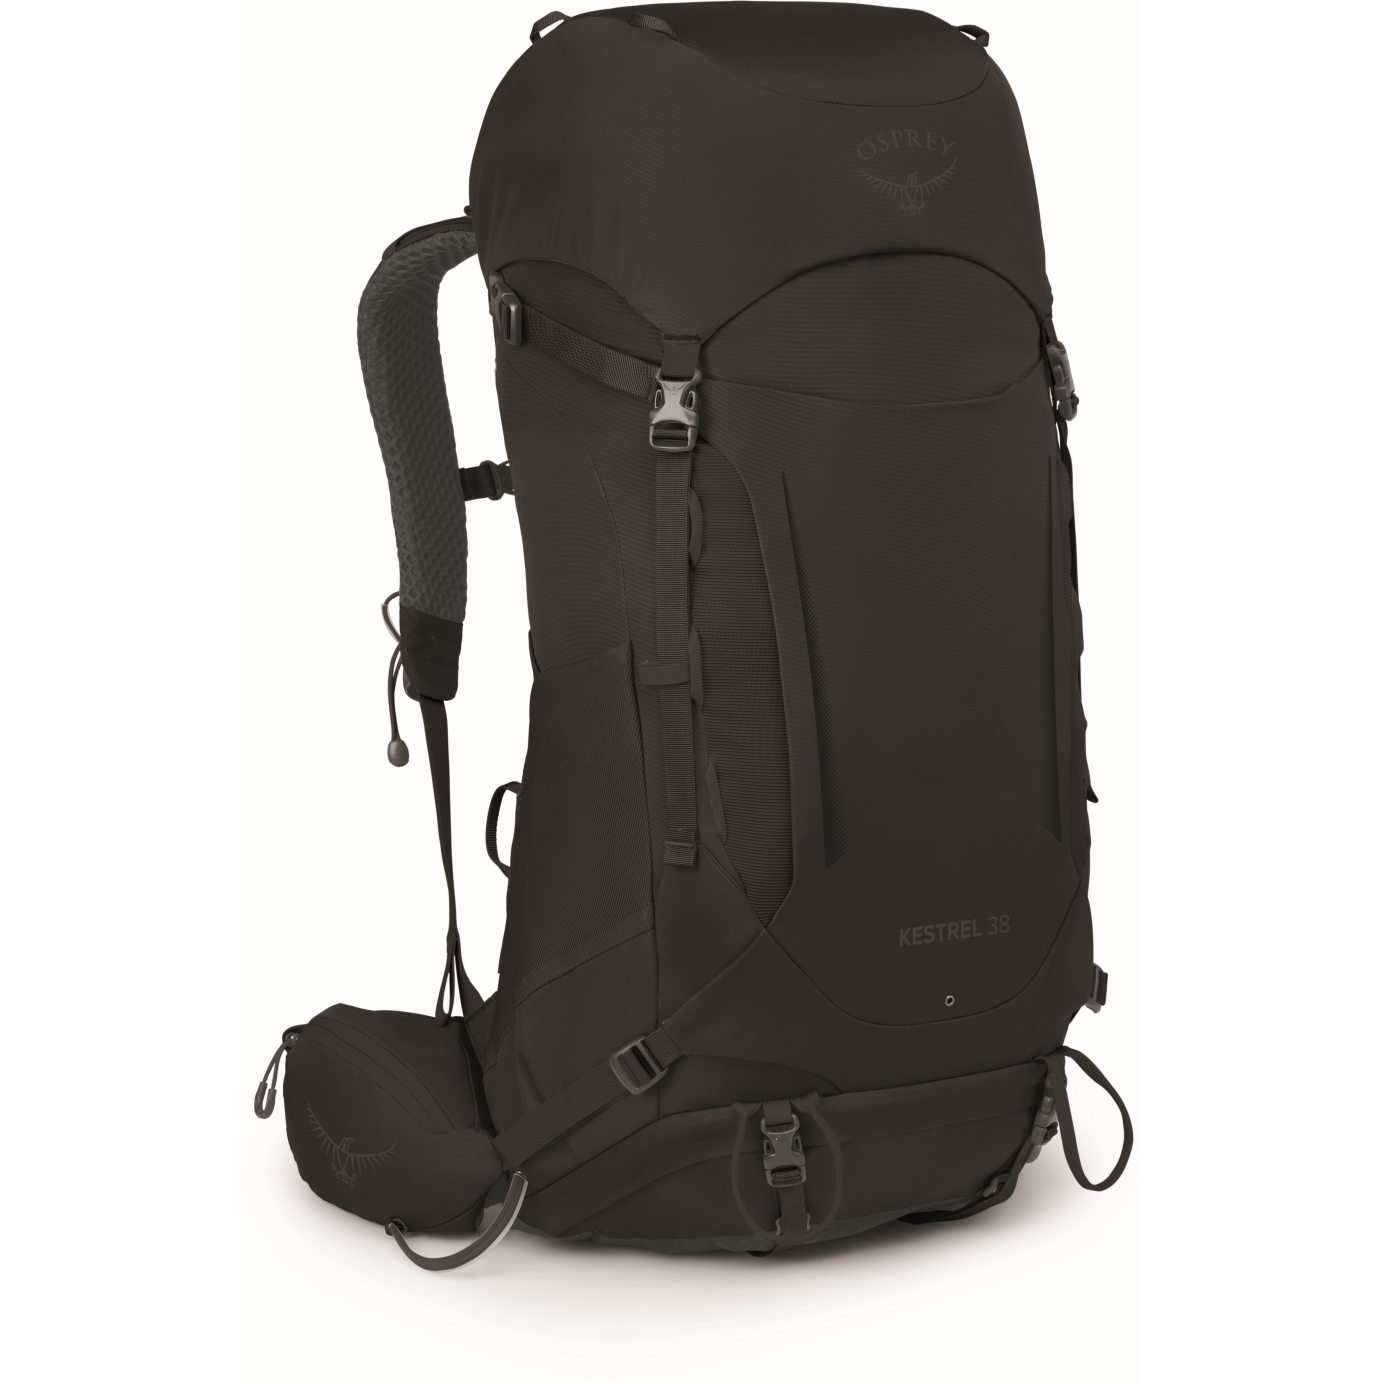 Image of Osprey Kestrel 38 Backpack - Black - L/XL